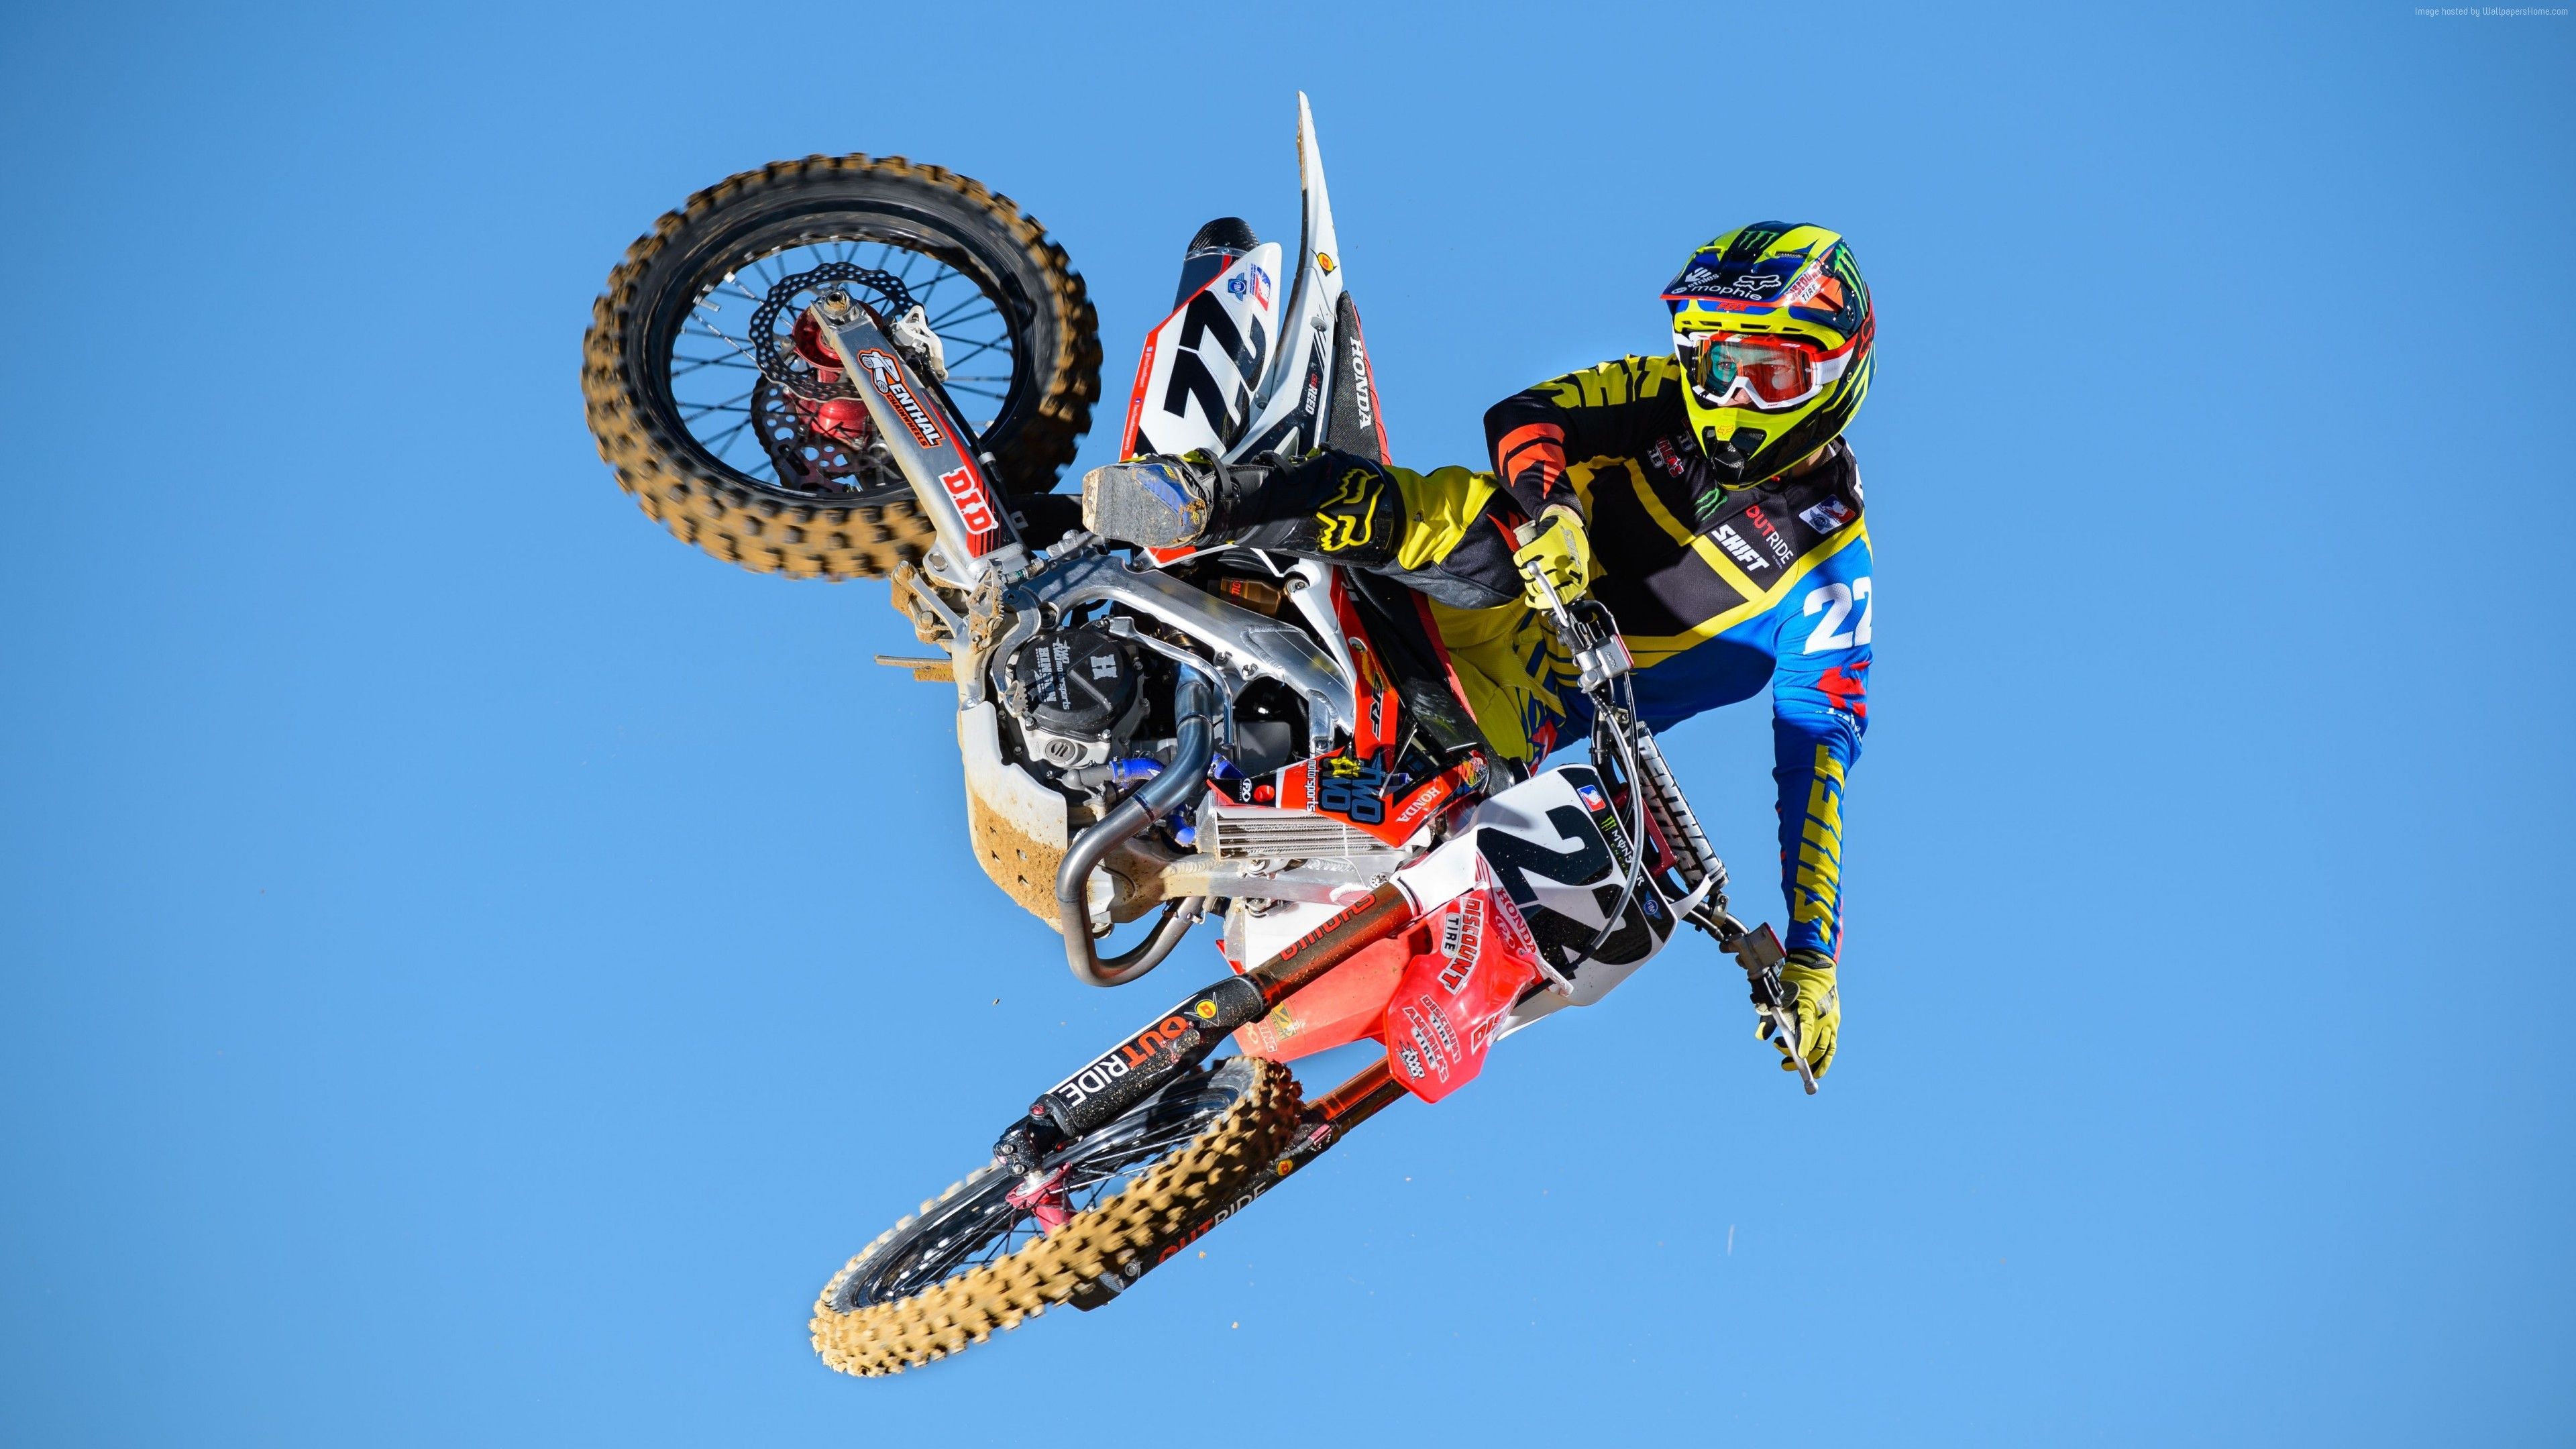 Stunt: Motorbike stunt riding, KTM dirt bike, Risky motorsport. 3840x2160 4K Wallpaper.